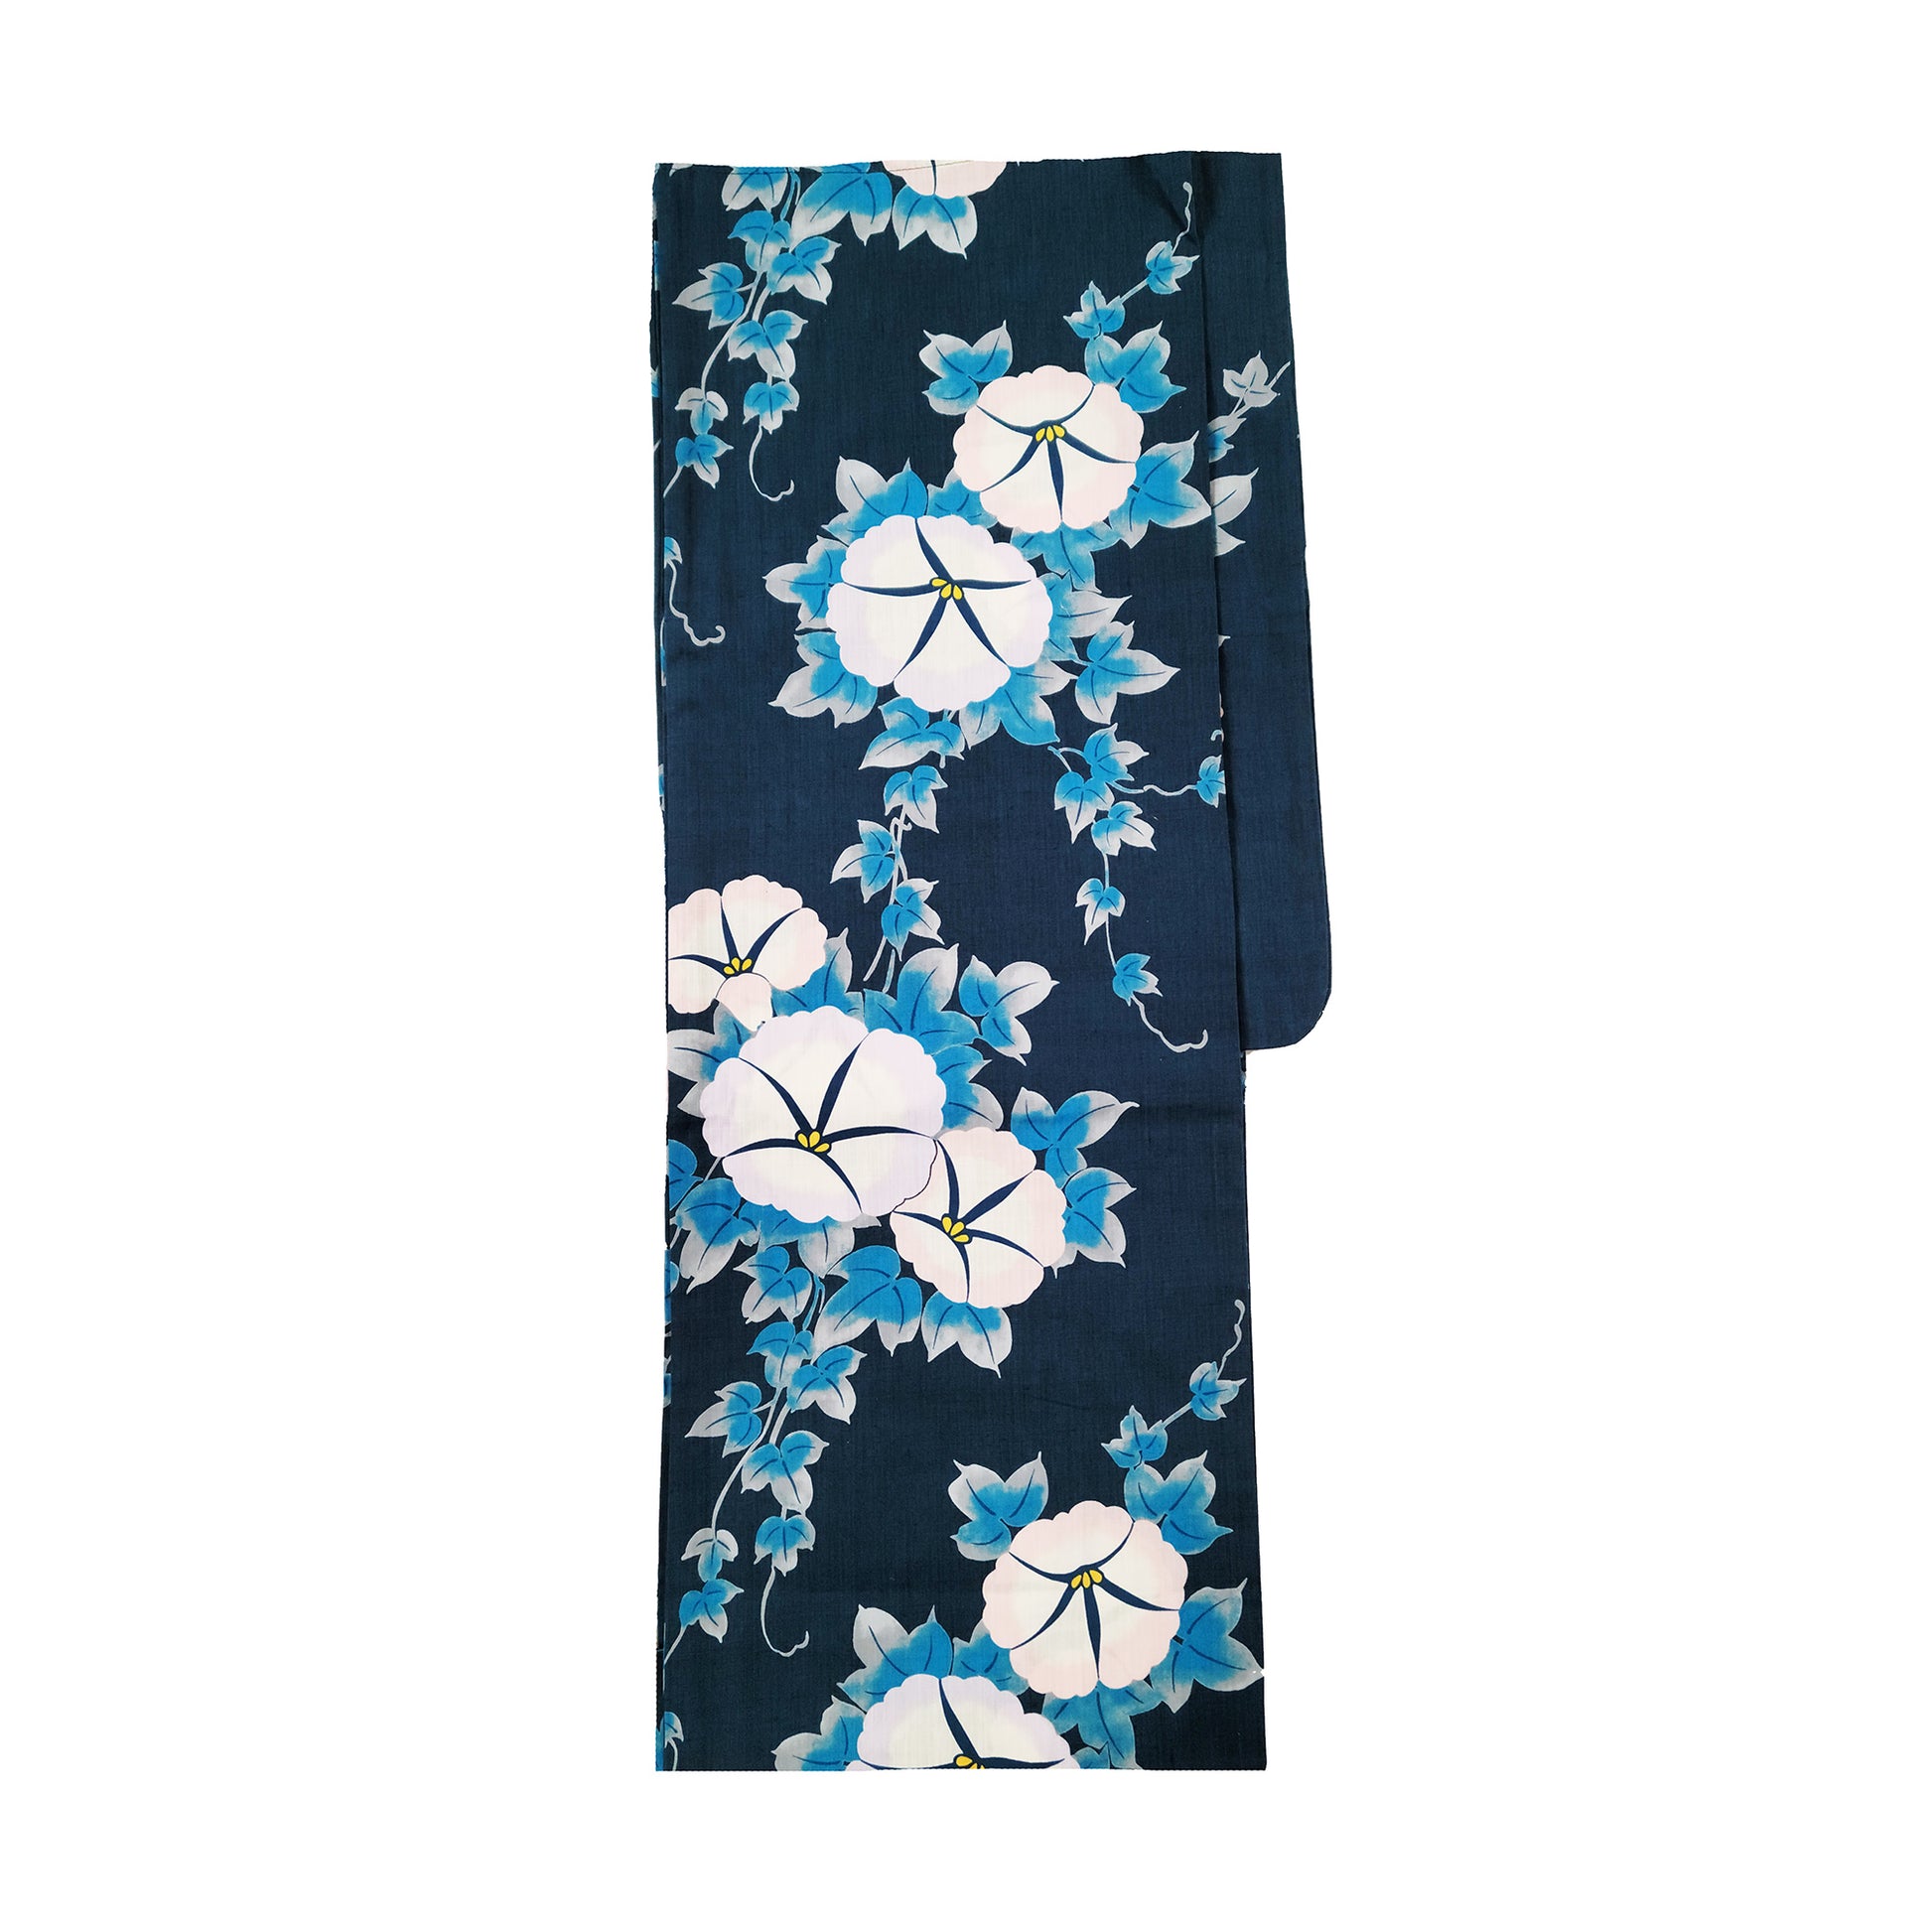 Women's Japanese Yukata Kimono - White Morning Glory in Indigo Blue